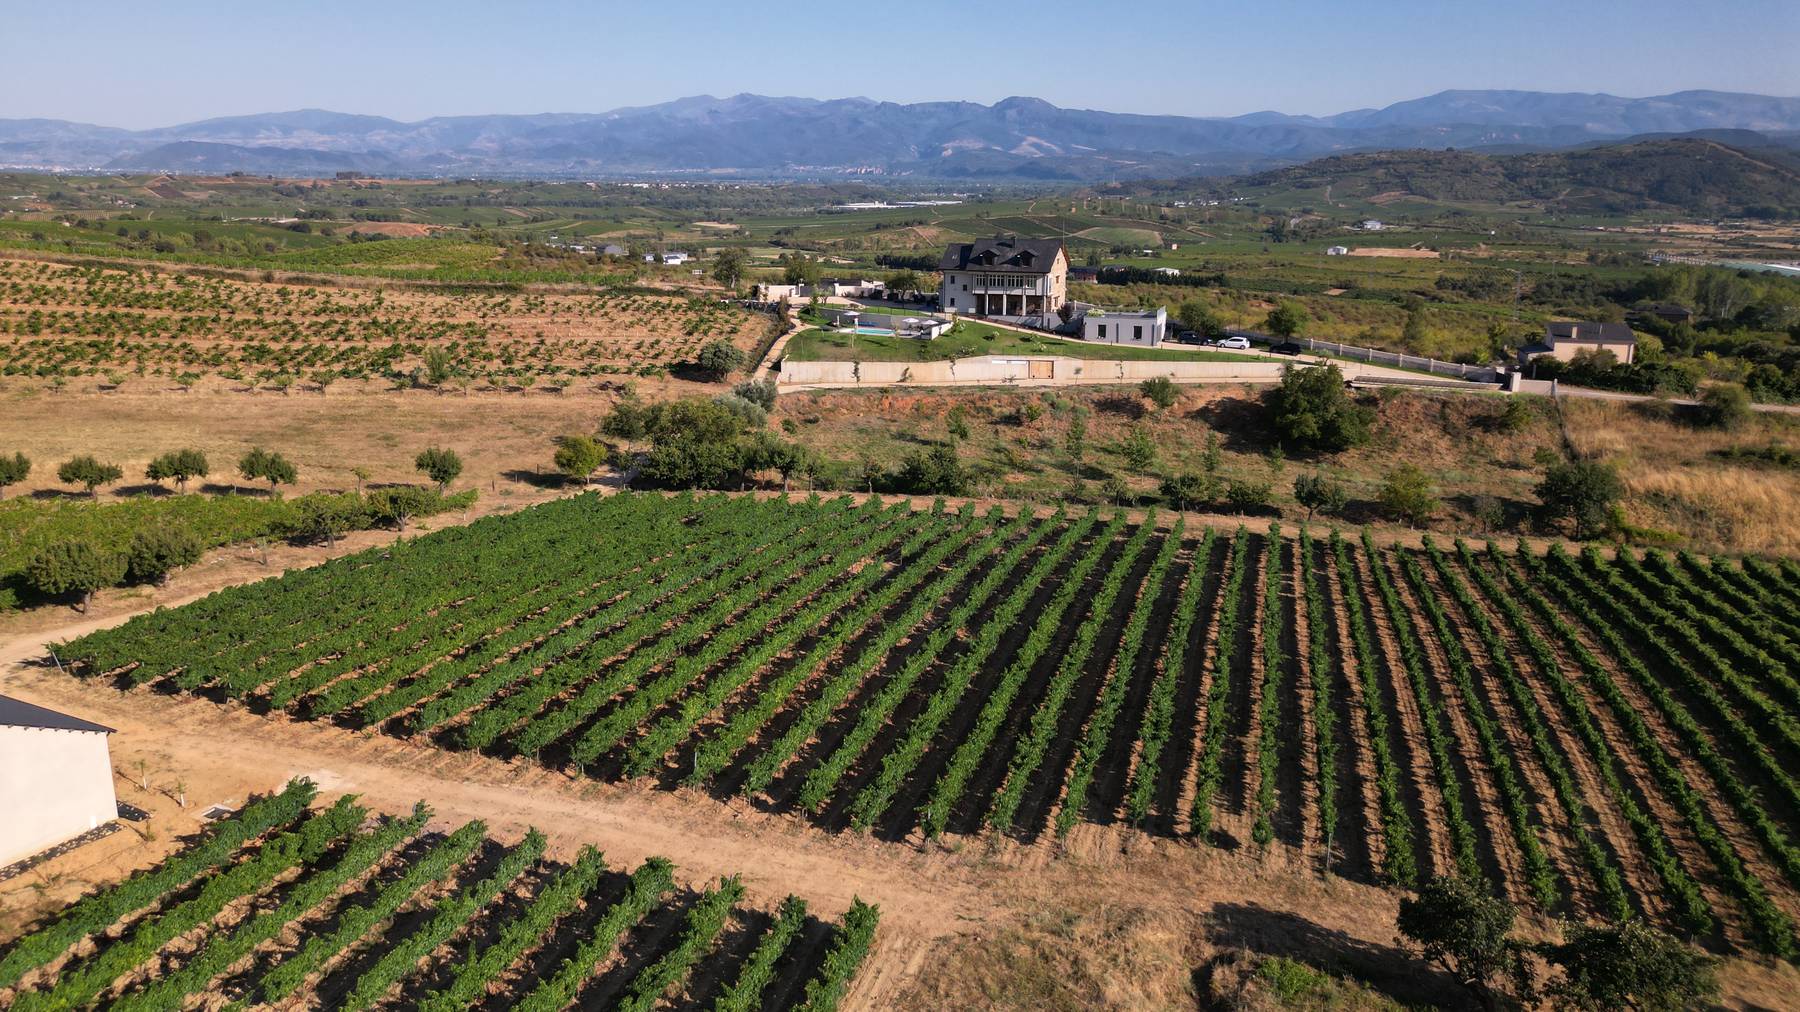 Roland Barmet besitzt in der spanischen Region El Bierzo zudem ein Weingut und Olivenplantage für Olivenöl, welches in die Schweiz importiert wird.